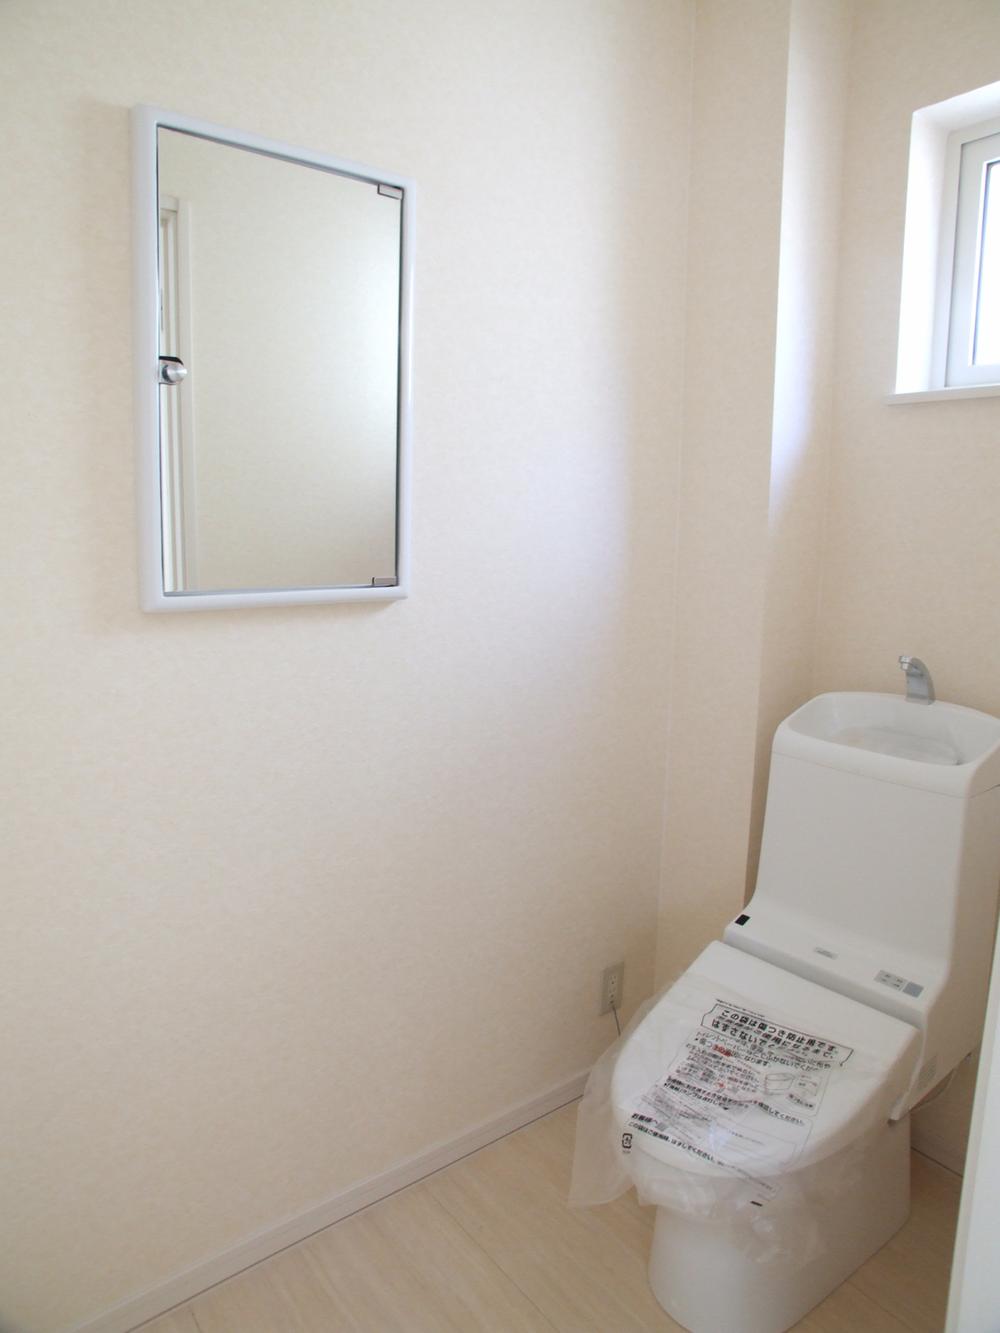 Toilet. toilet / With mirror-housed